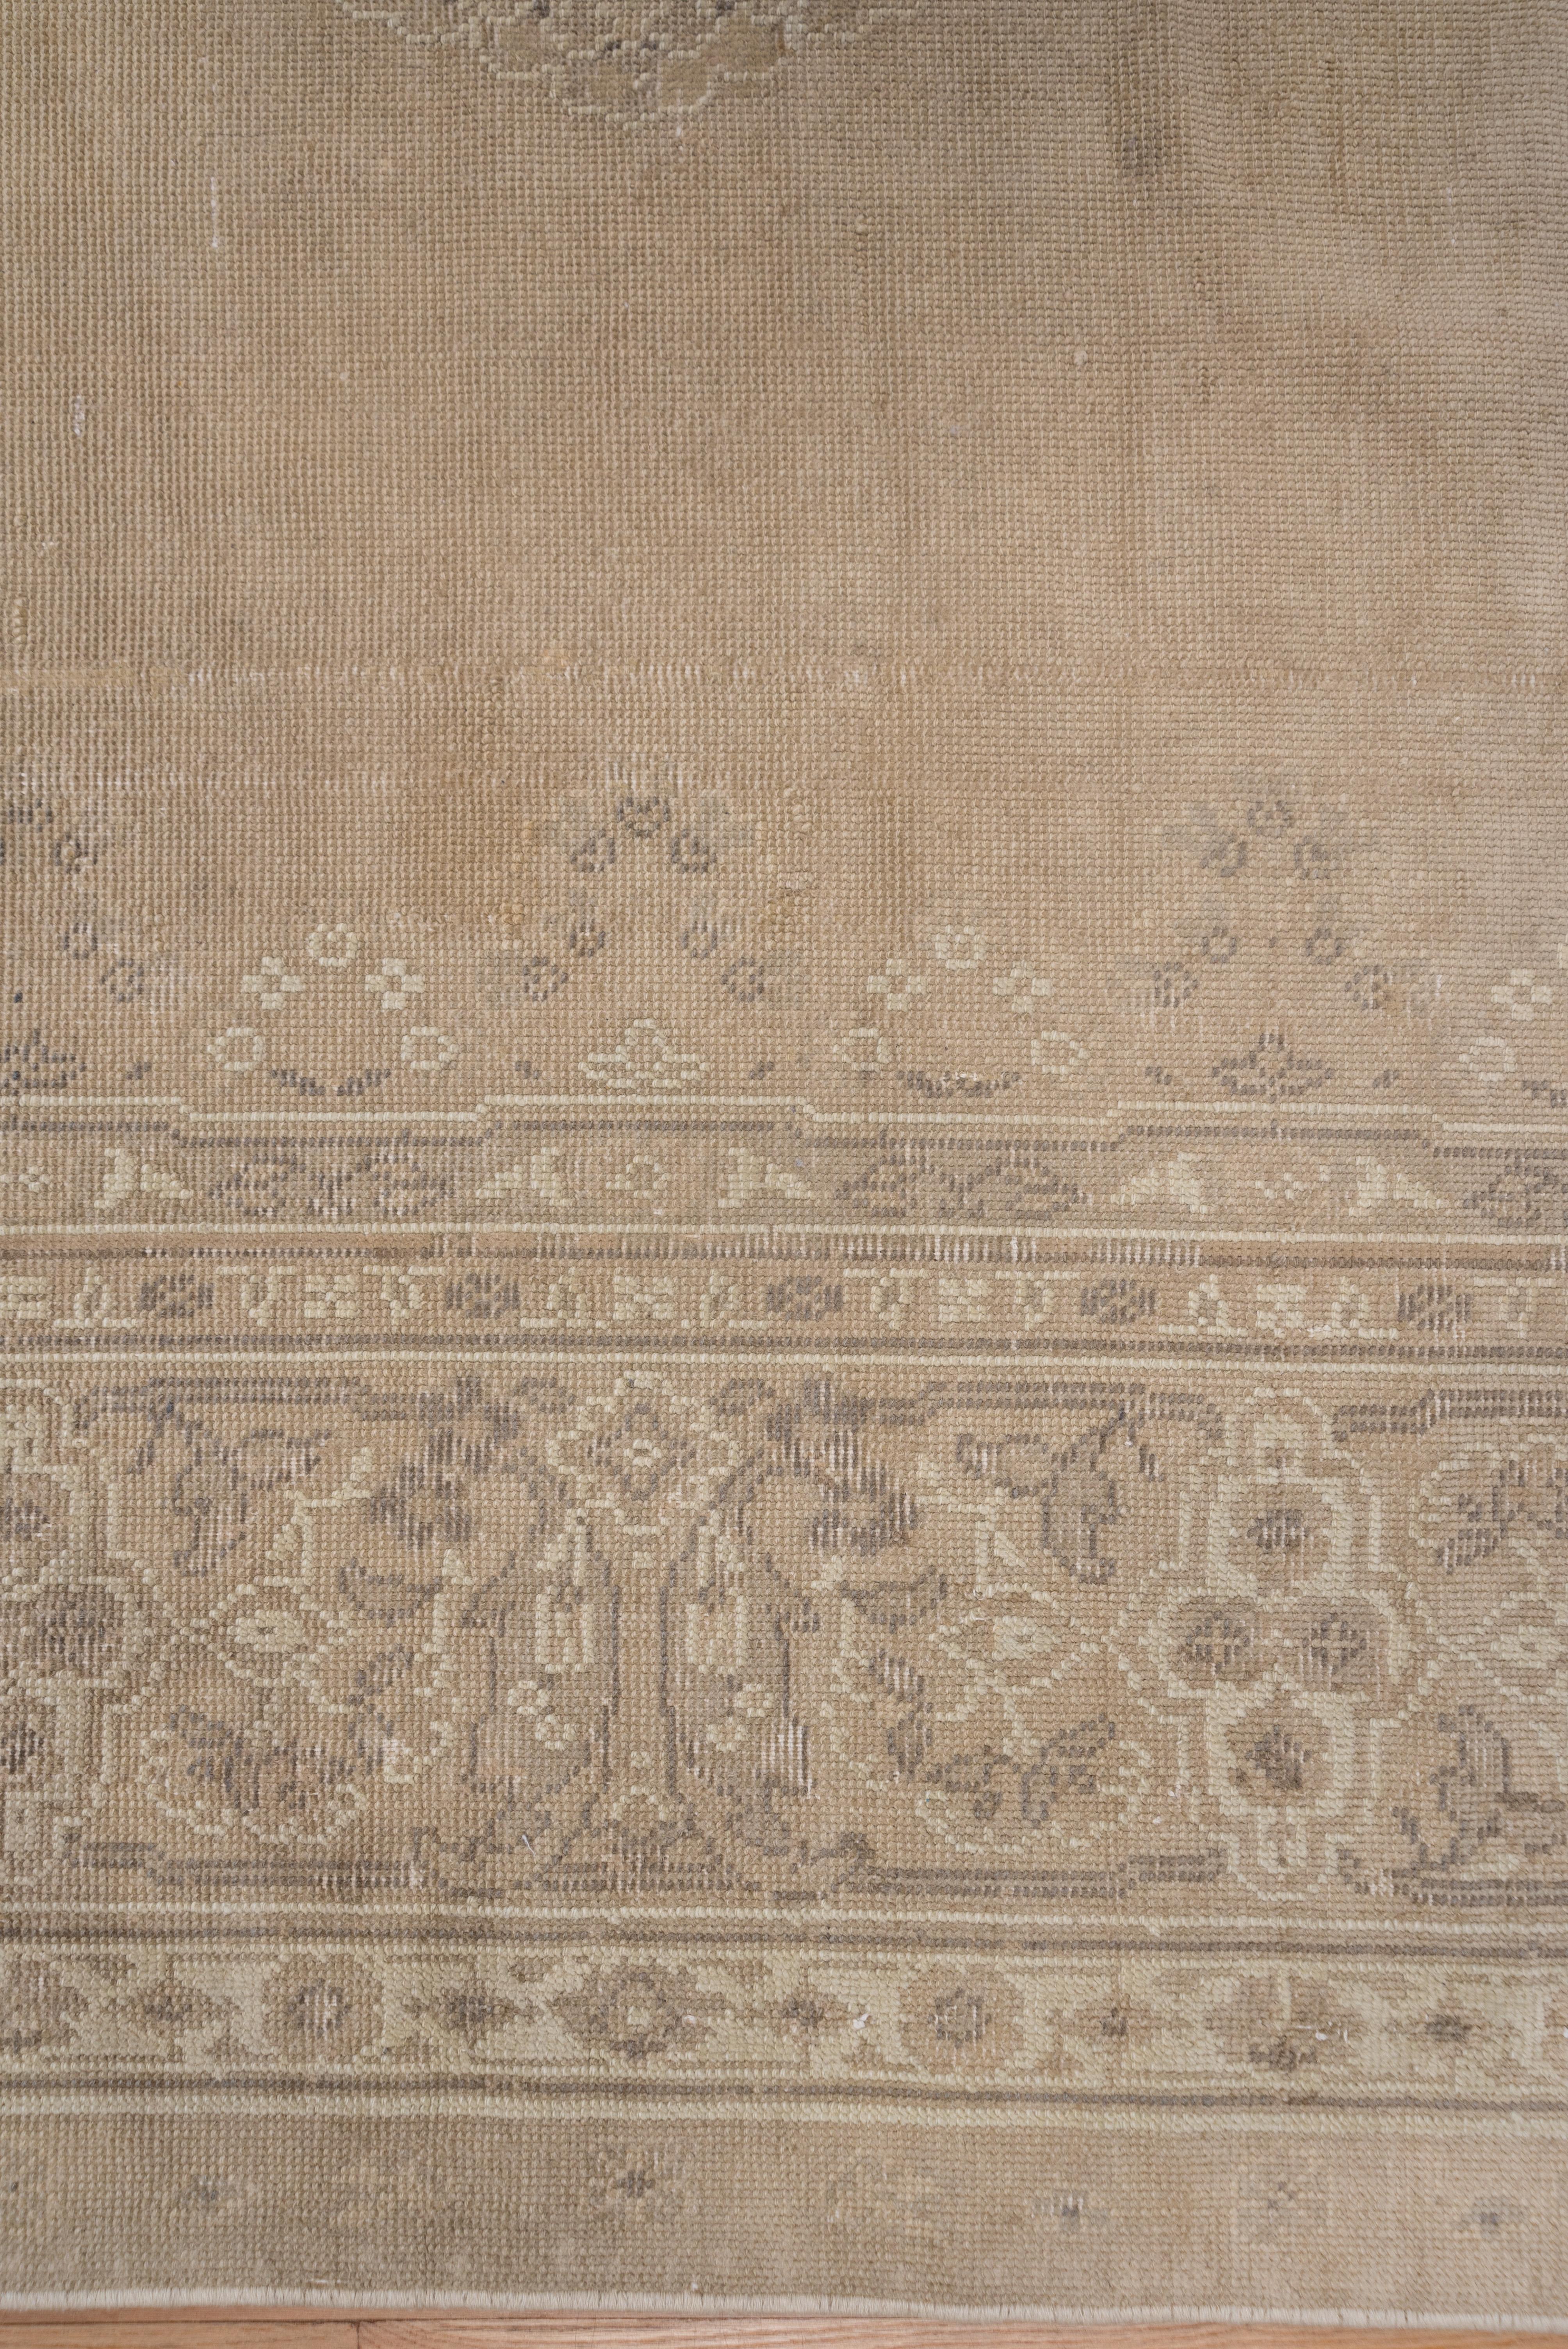 Wool Antique Turkish Sivas Large Carpet, Neutral Palette, circa 1920s For Sale